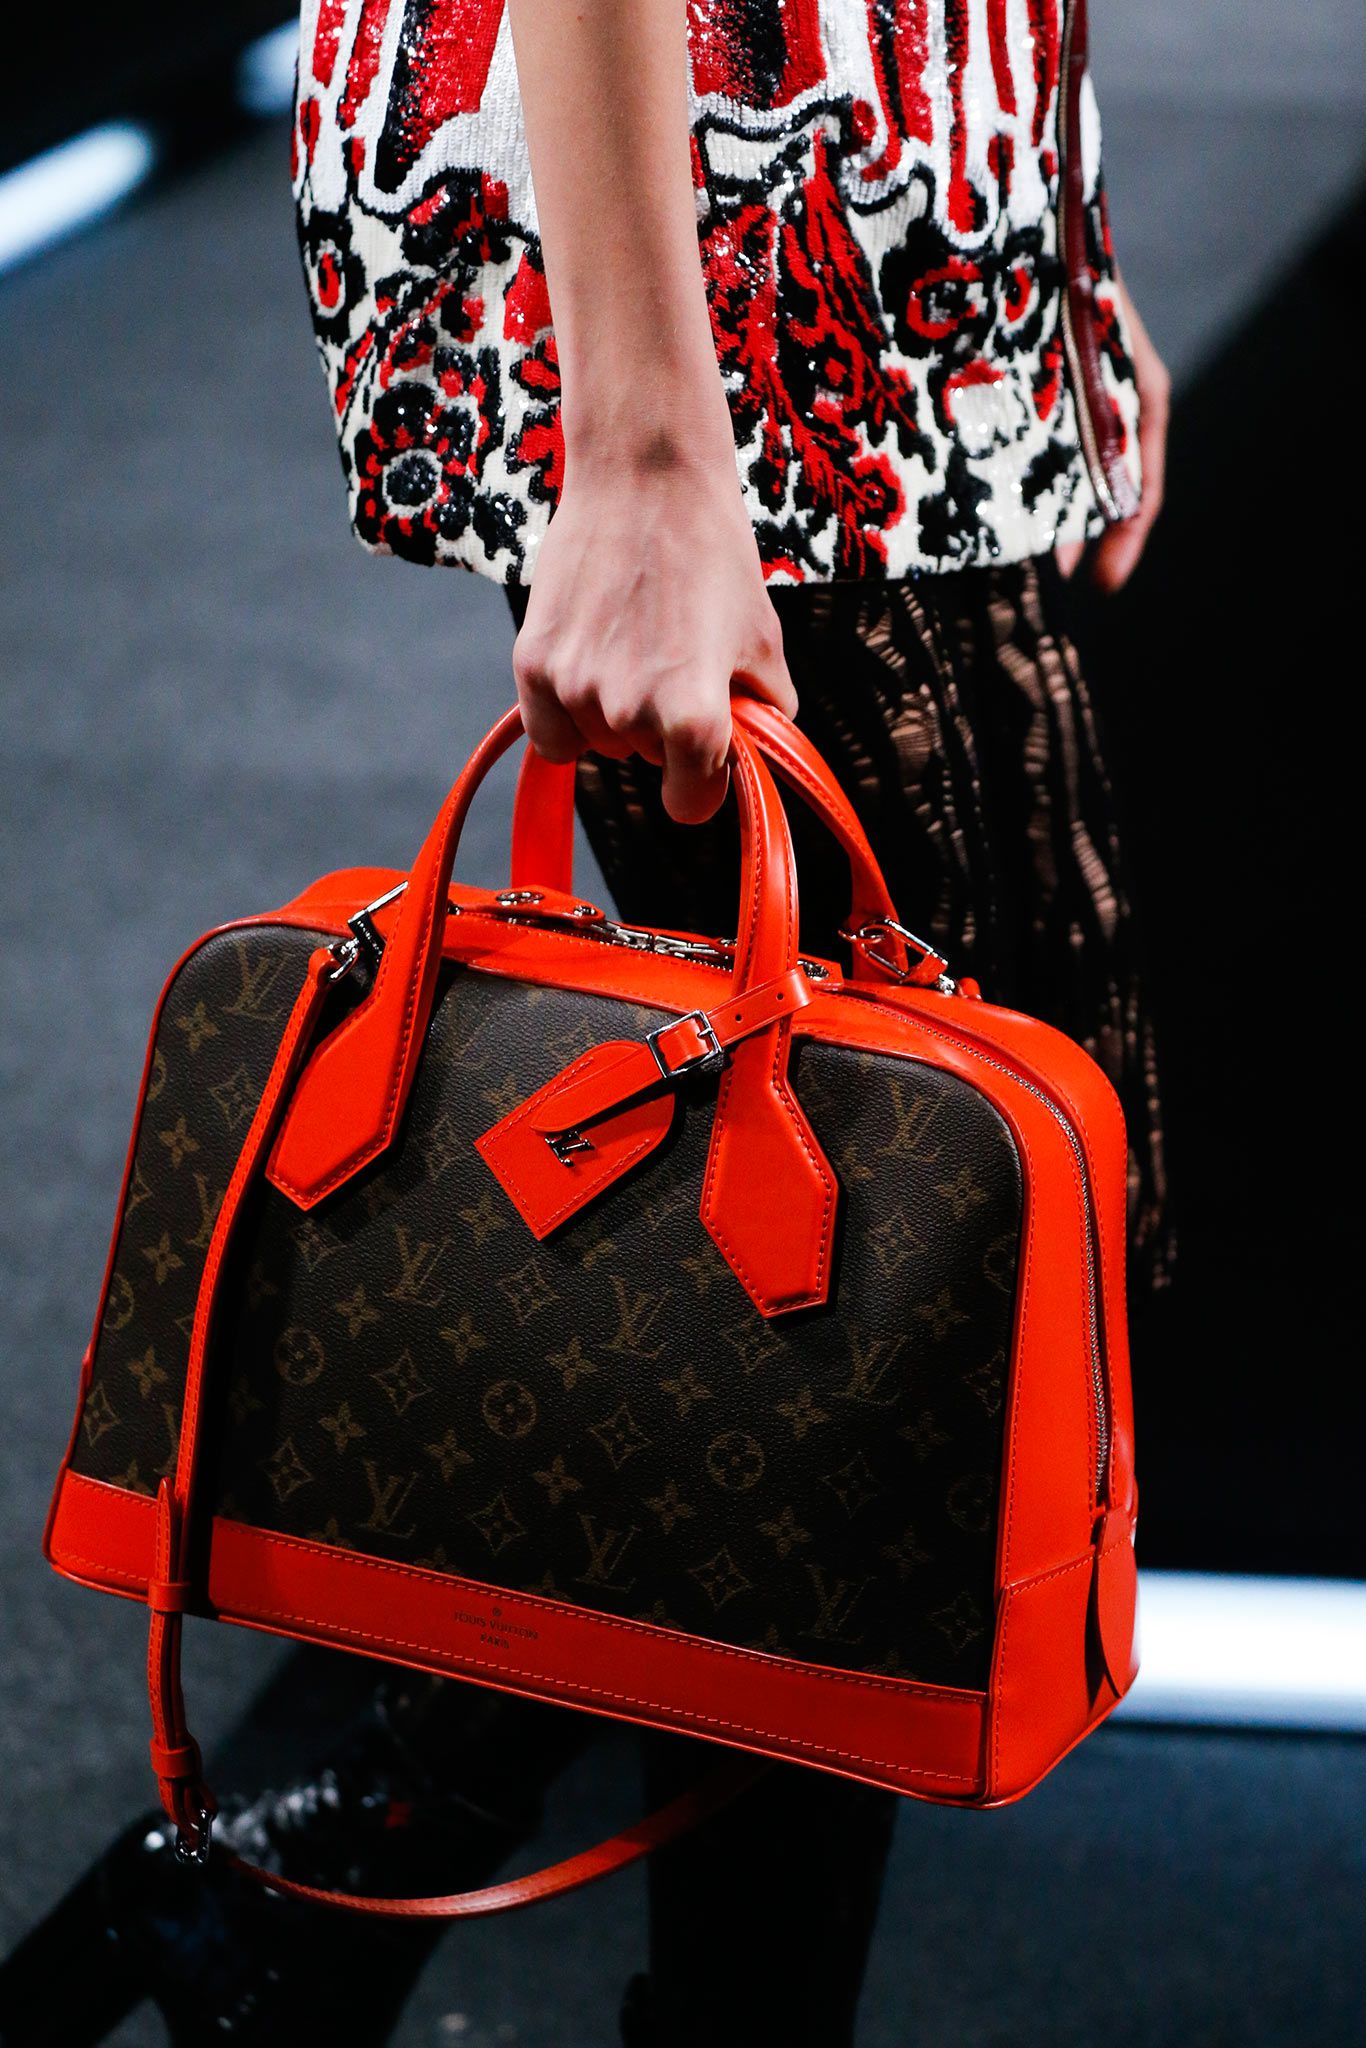 The Louis Vuitton Dora Bag